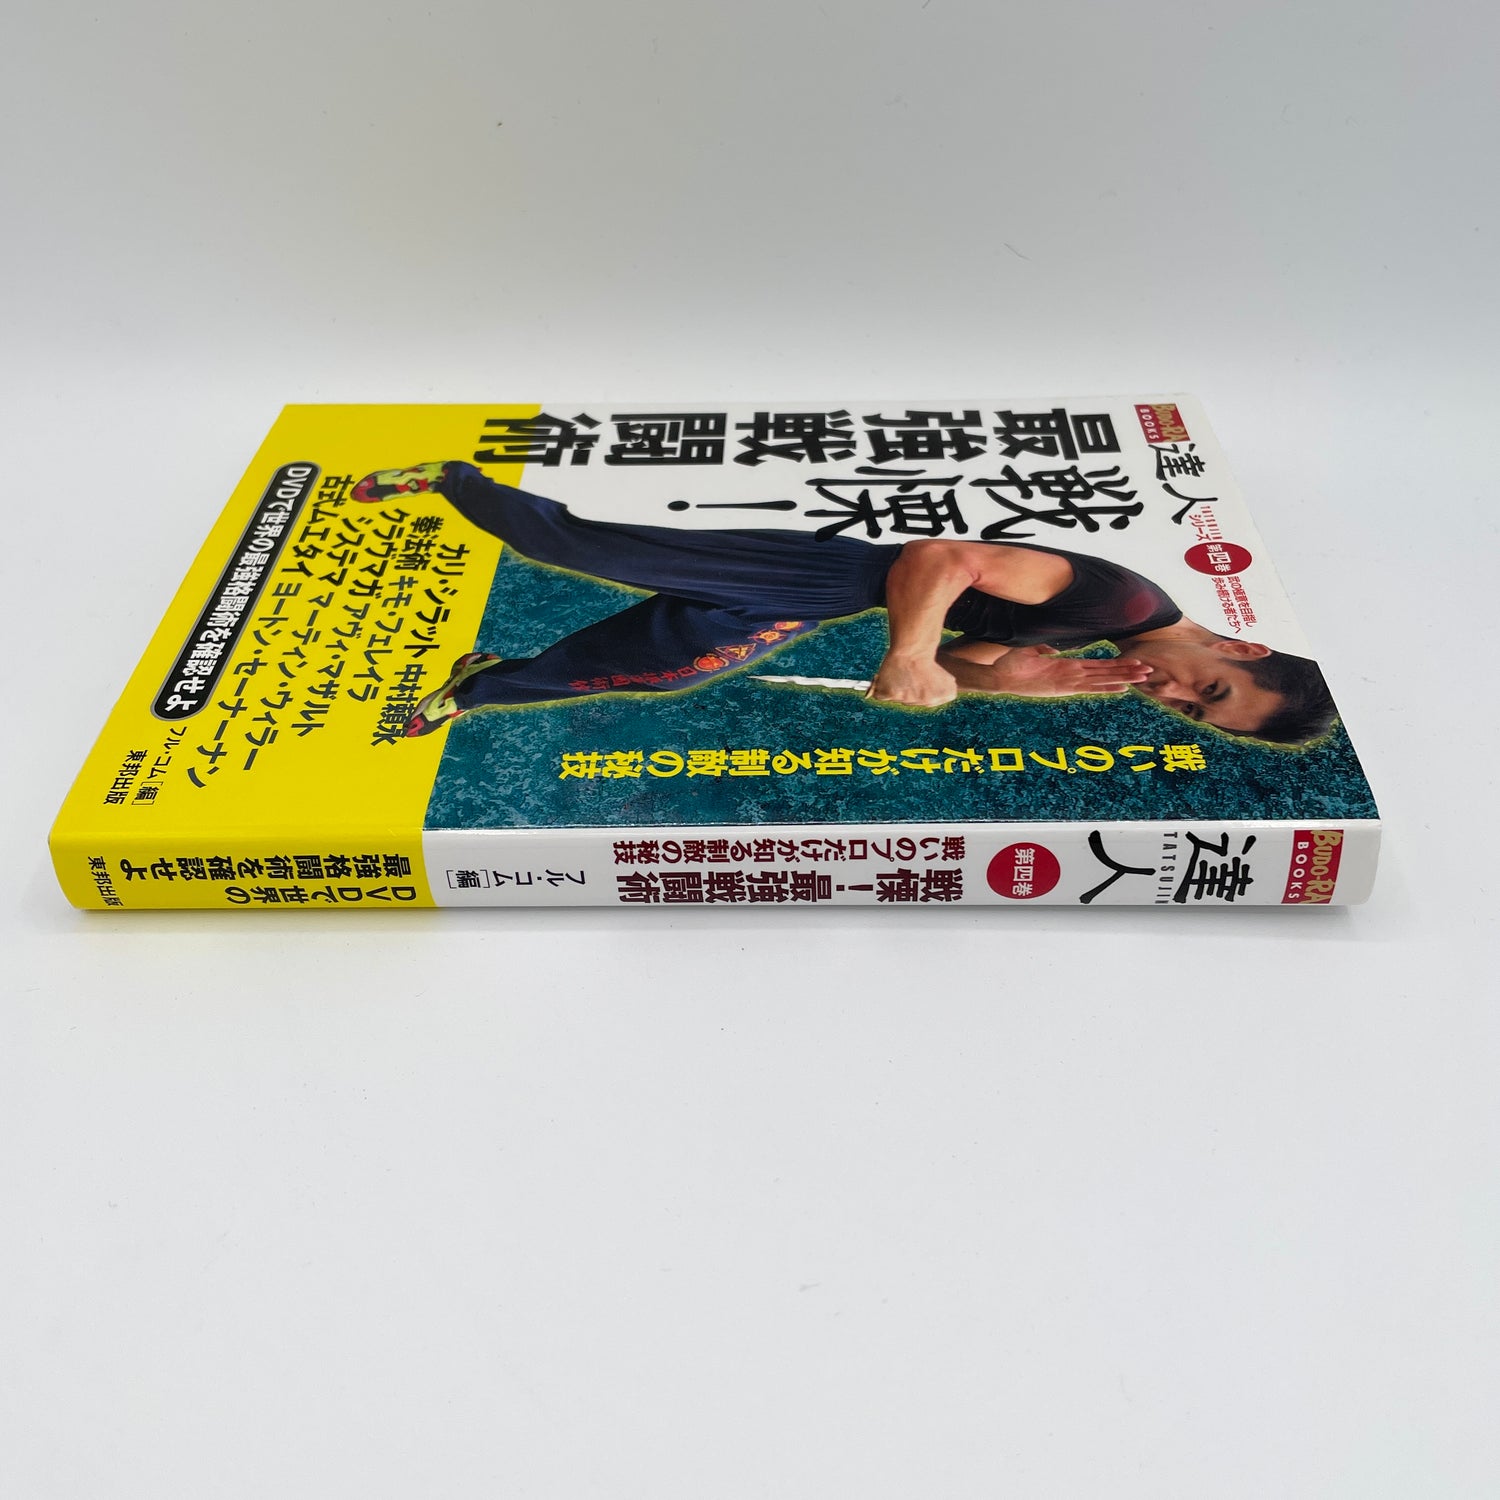 Tatsujin Vol 4: Libro y DVD de técnicas de combate más fuertes (usado)